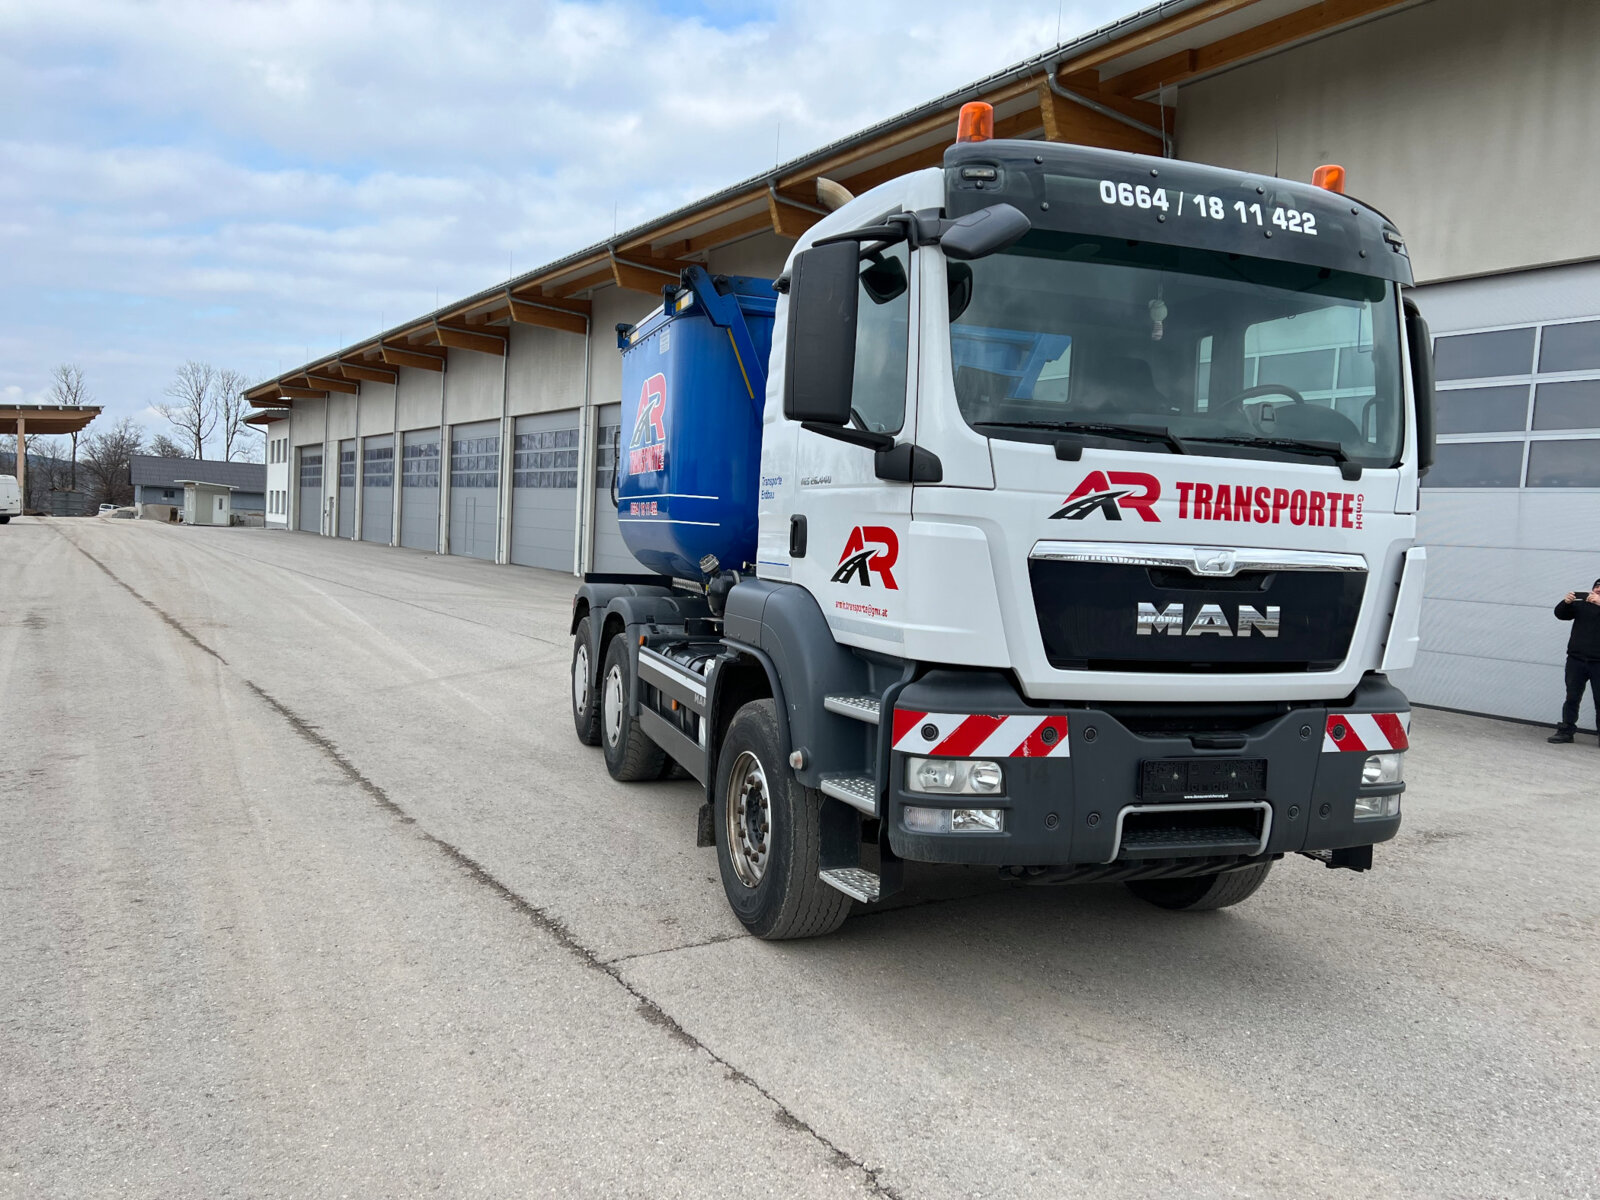 Güterbeförderung der AR Transporte GmbH